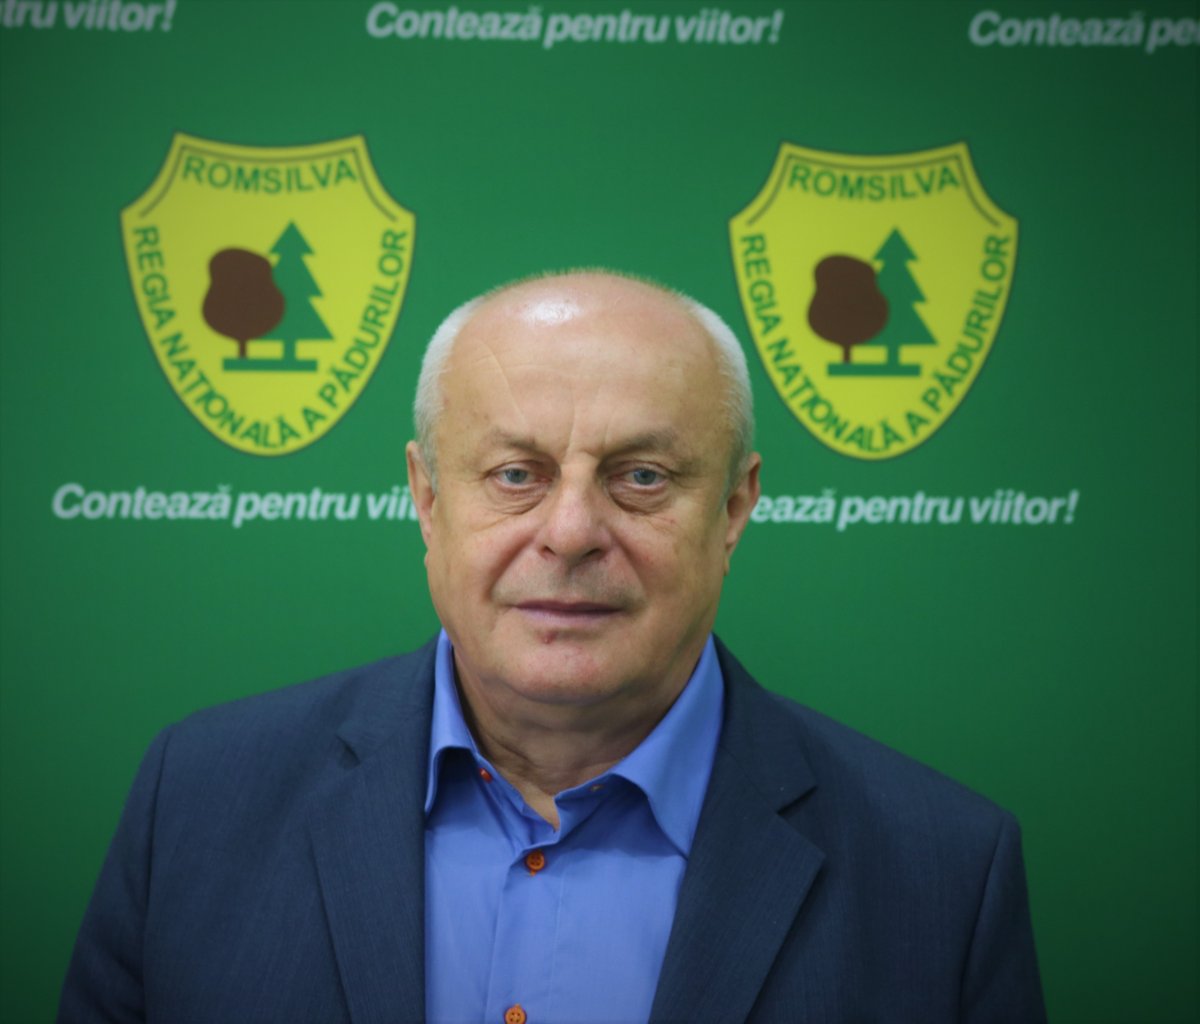 Consiliul de Administrație al Regiei Naționale a Pădurilor – Romsilva a numit un nou director general cu mandat provizoriu 